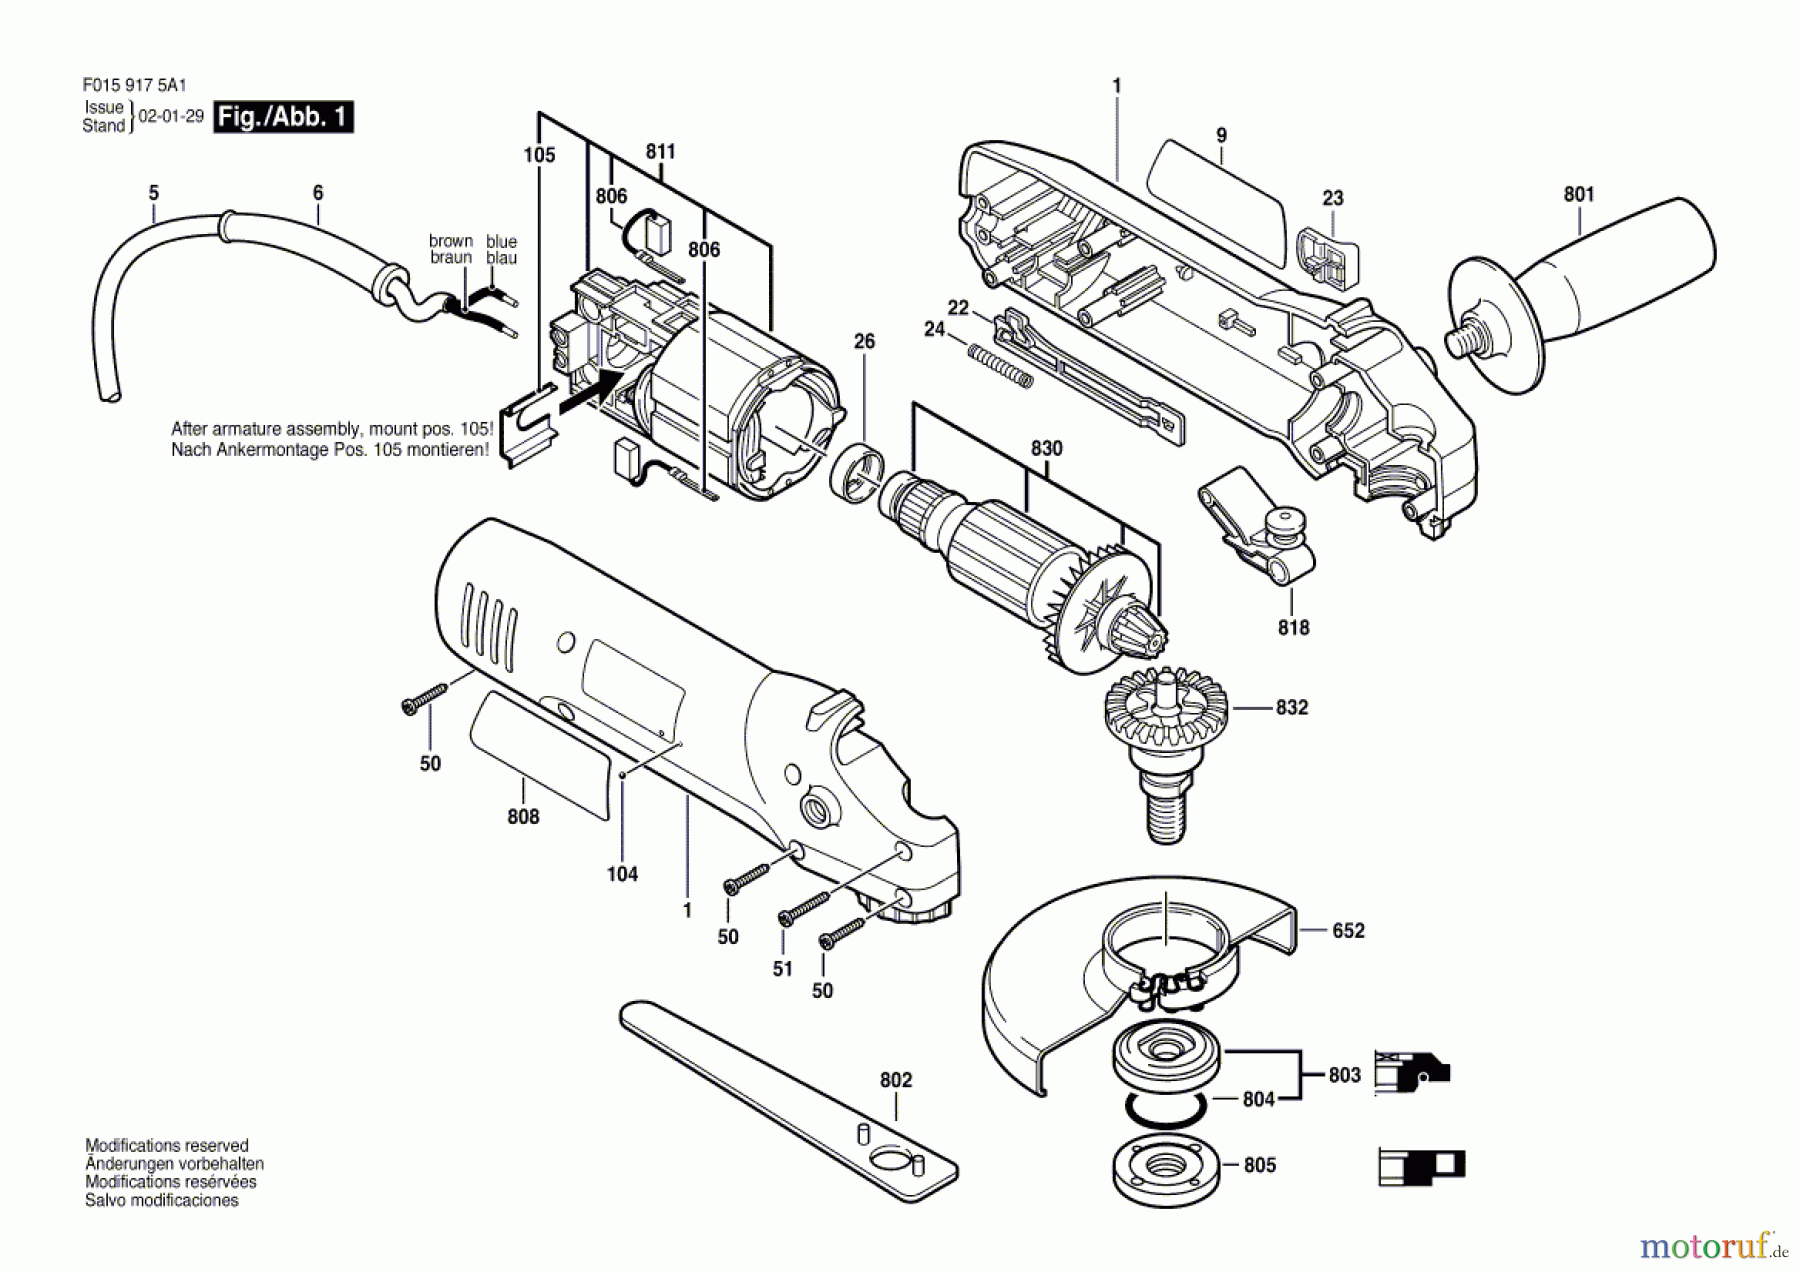  Bosch Werkzeug Winkelschleifer 9175 Seite 1